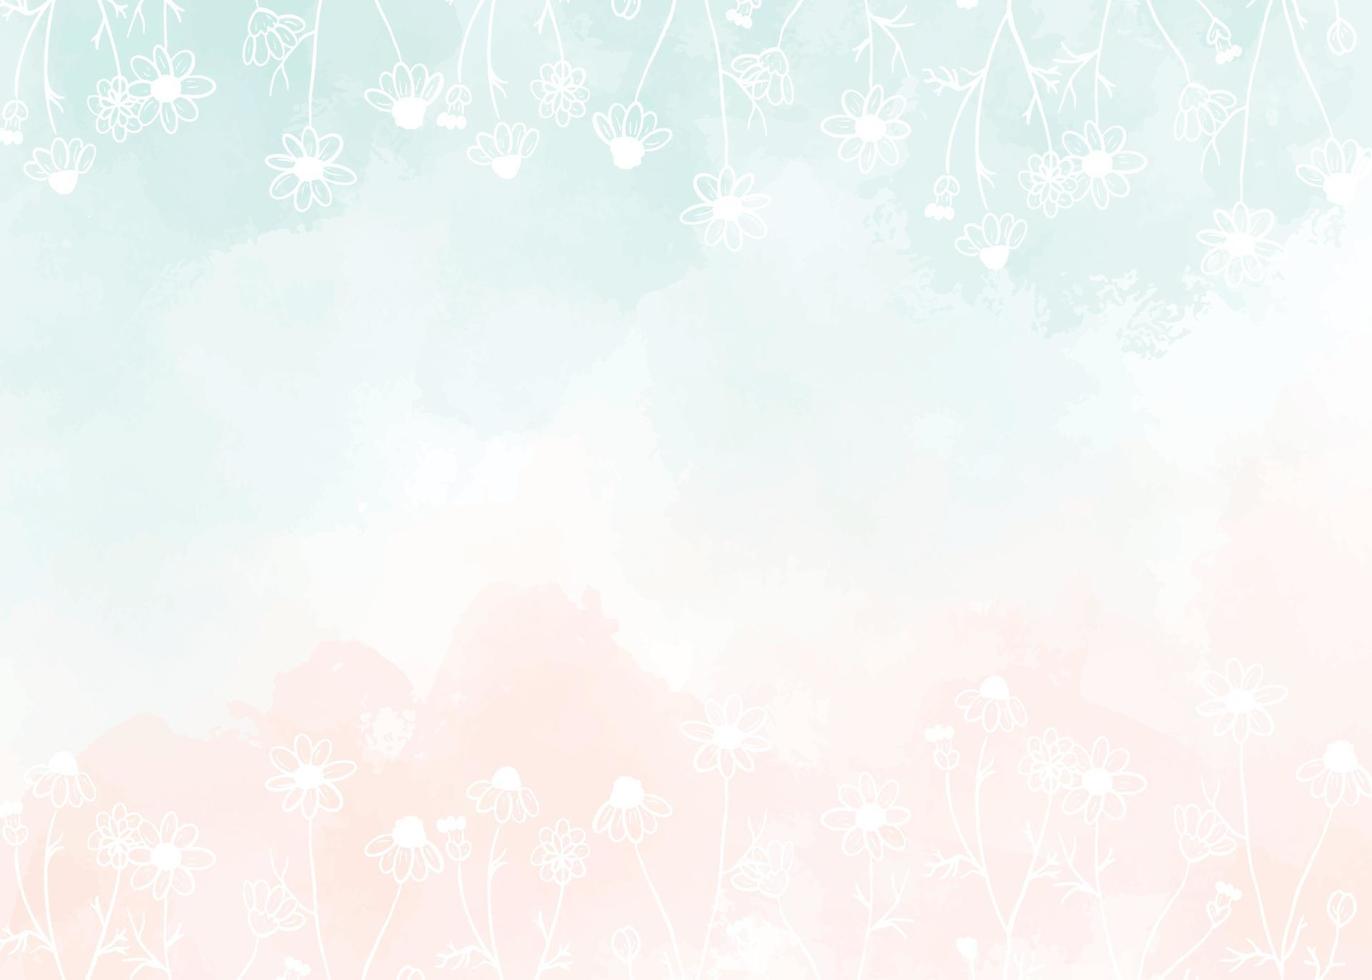 acquarello verde chiaro e rosa antico sfondo rosa pesca splash con doodle bianco linea arte fiori di camomilla selvatica vettore